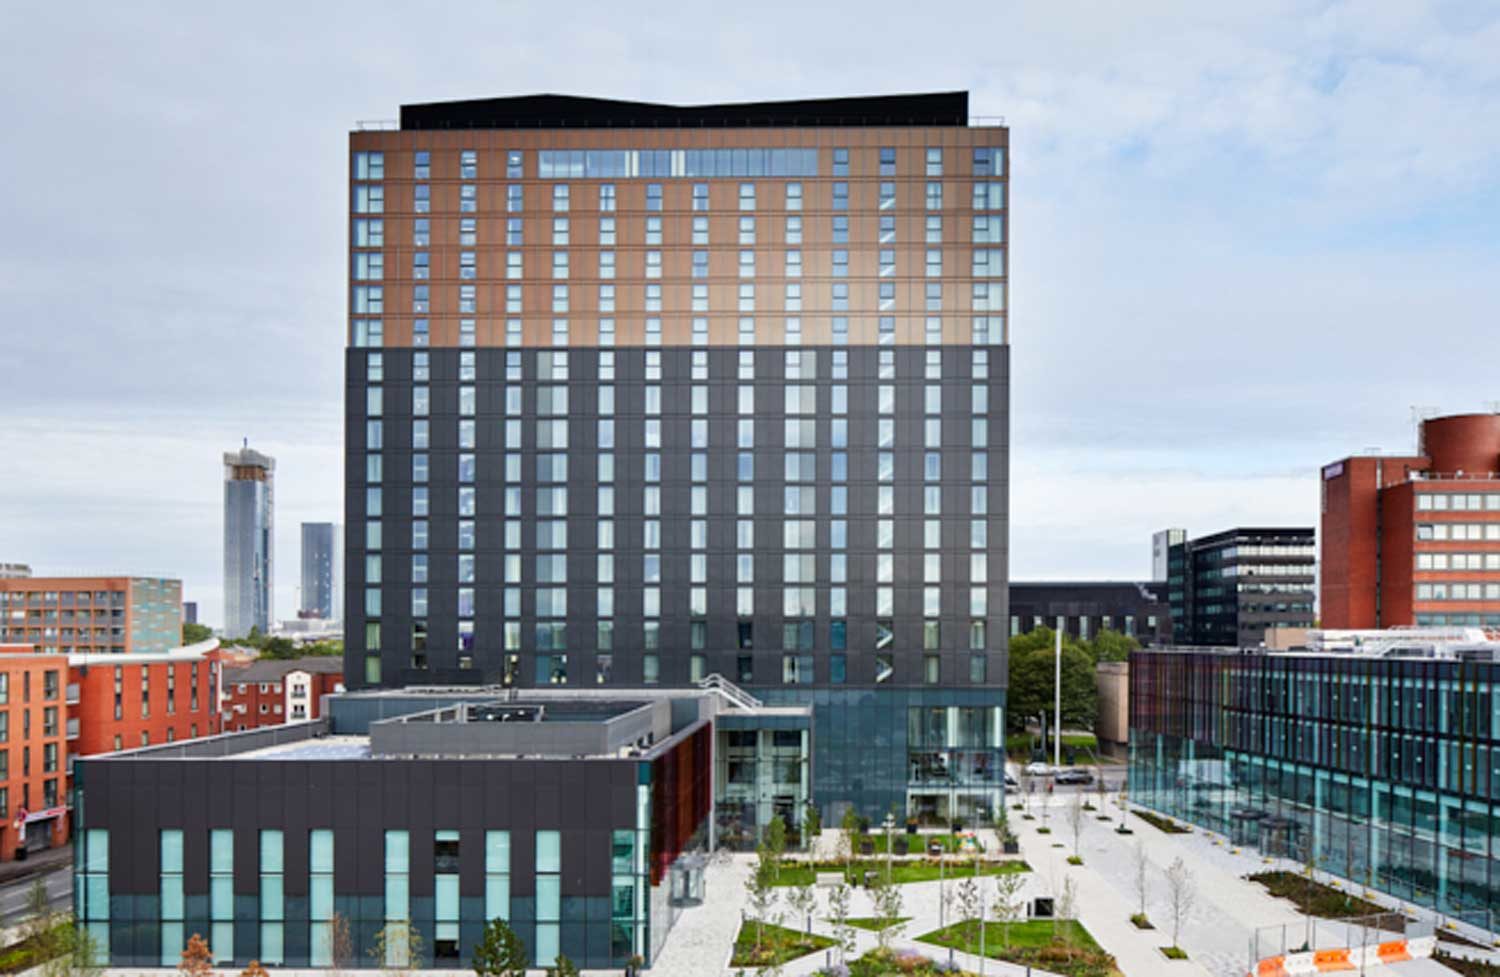 Neubau Crowne Plaza, Staybridge Suites Hotel, Manchester